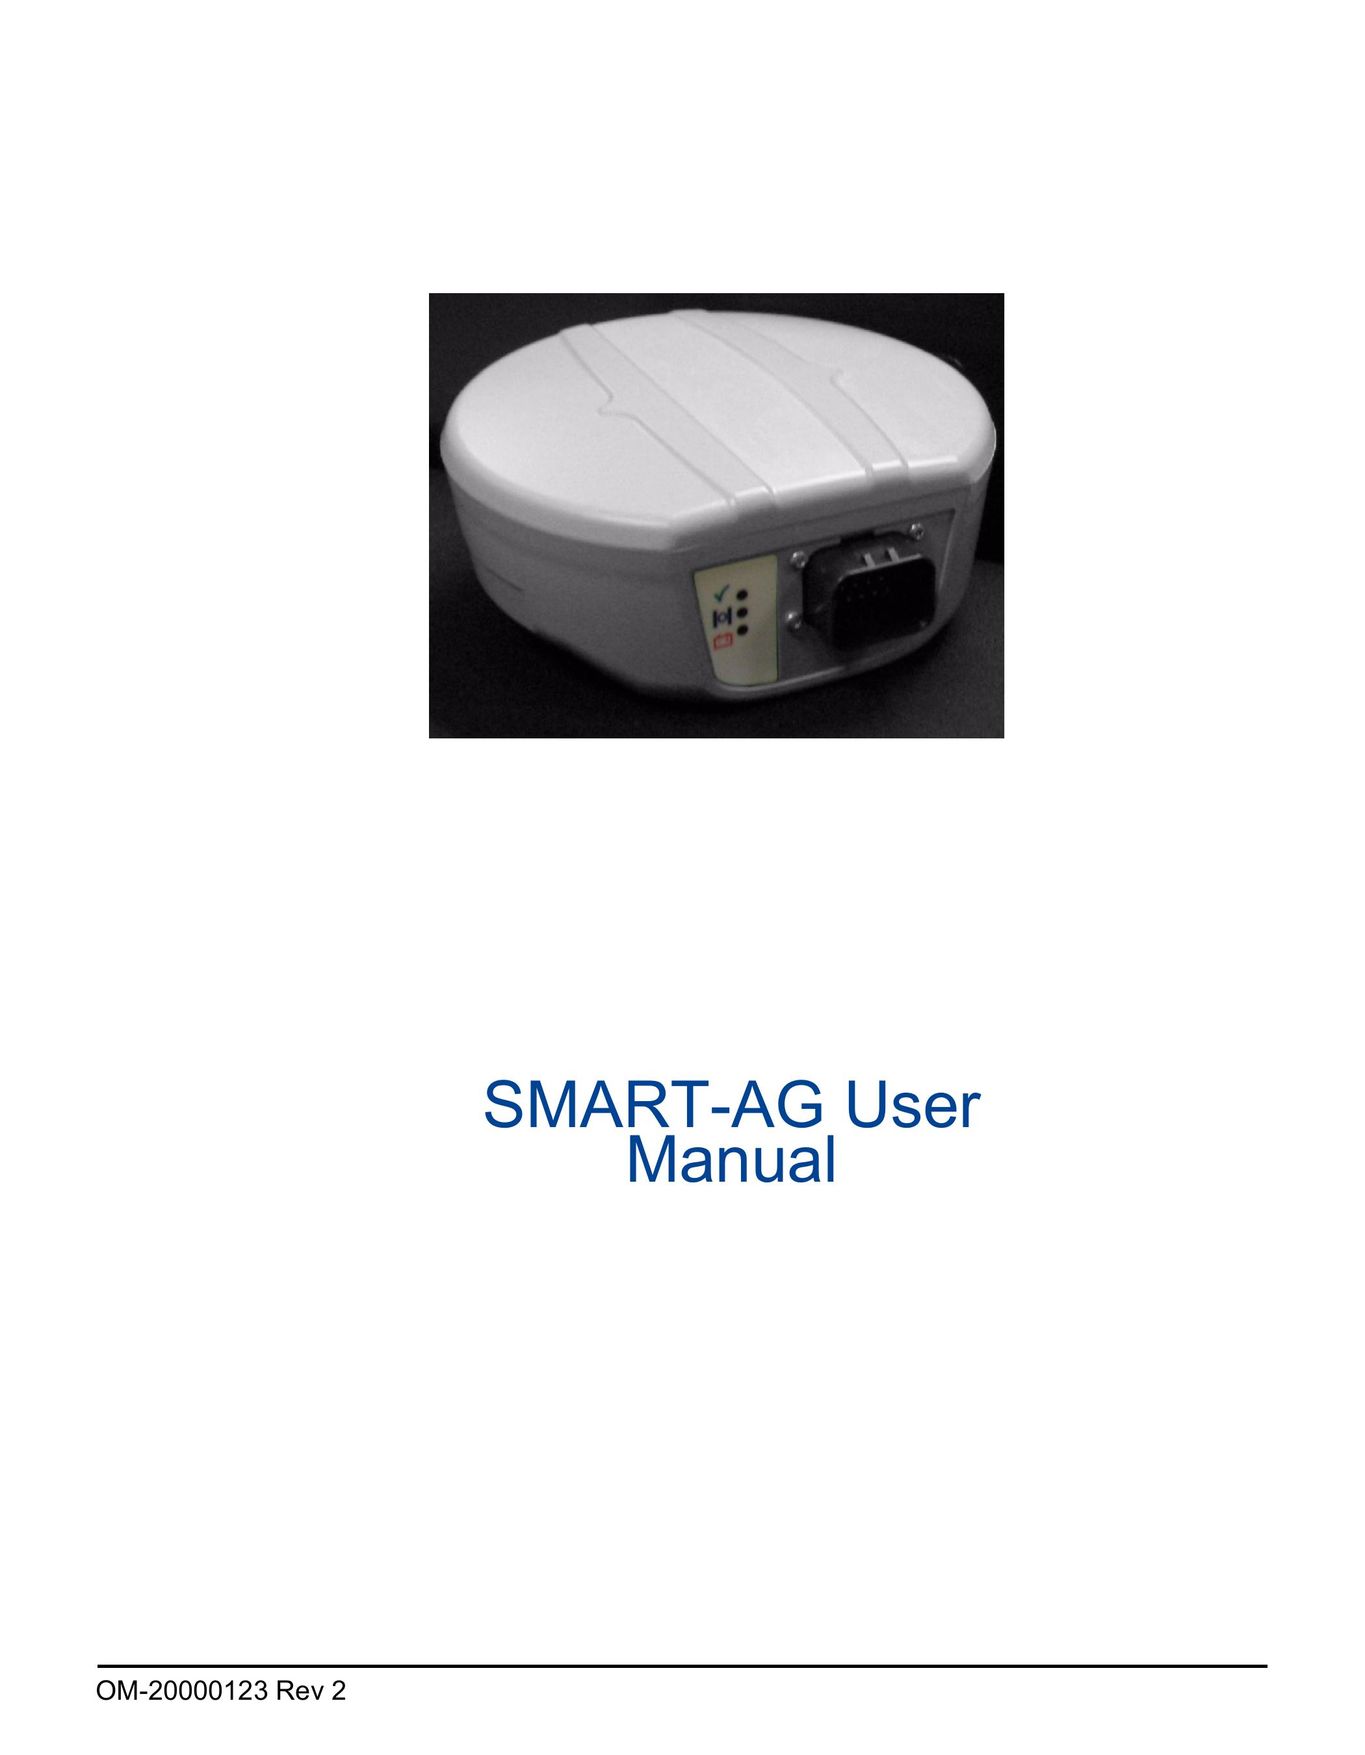 Novatel SMART-AG Network Card User Manual